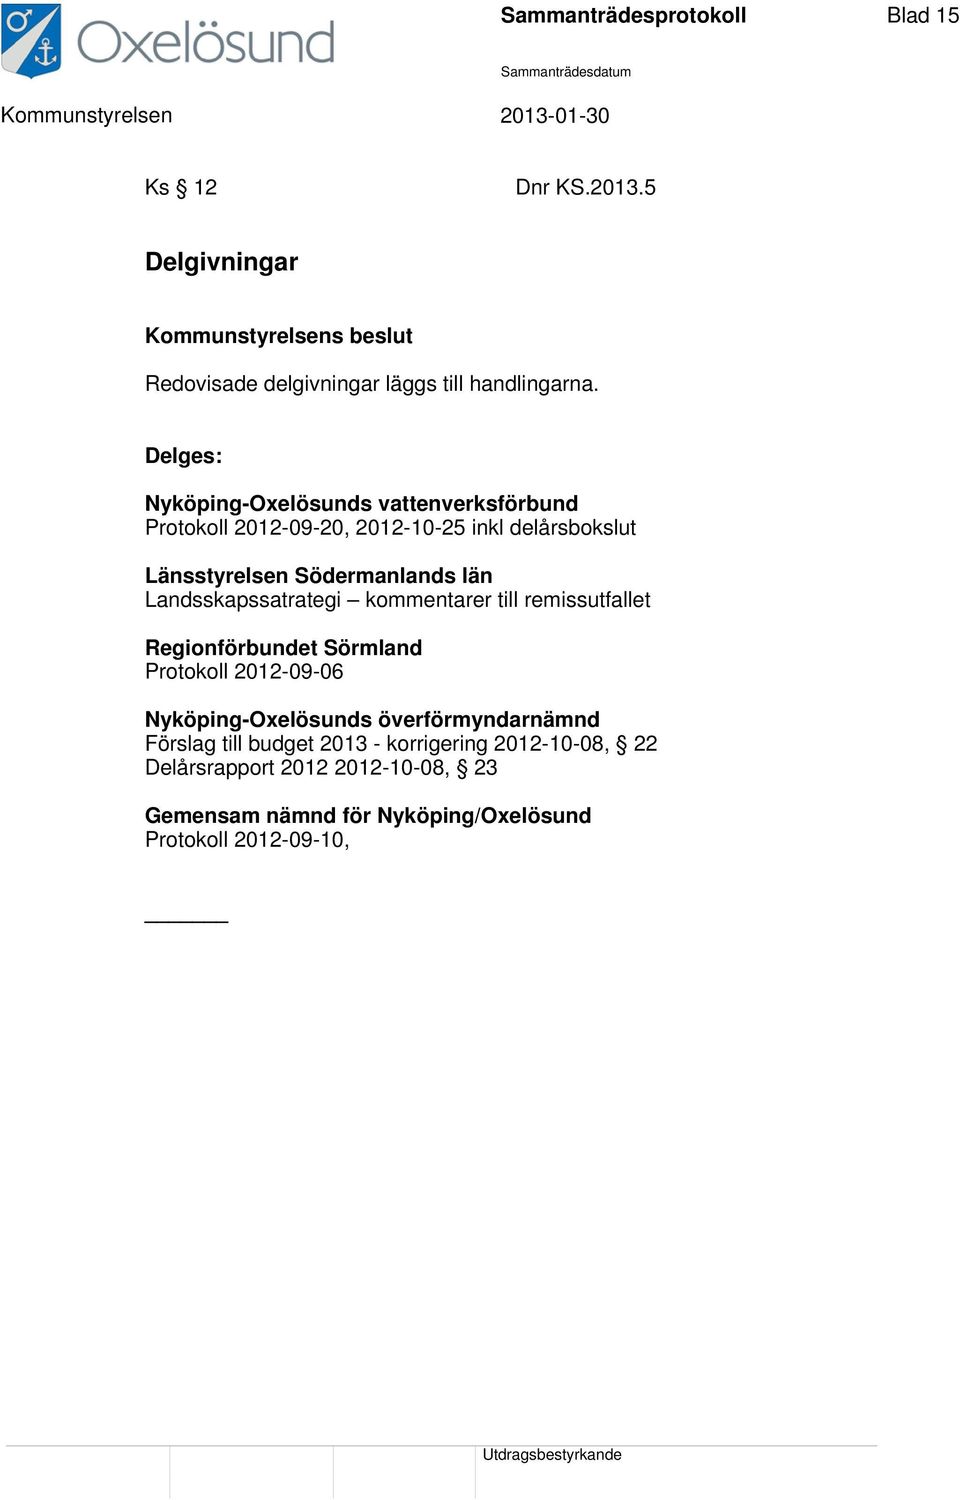 Landsskapssatrategi kommentarer till remissutfallet Regionförbundet Sörmland Protokoll 2012-09-06 Nyköping-Oxelösunds överförmyndarnämnd